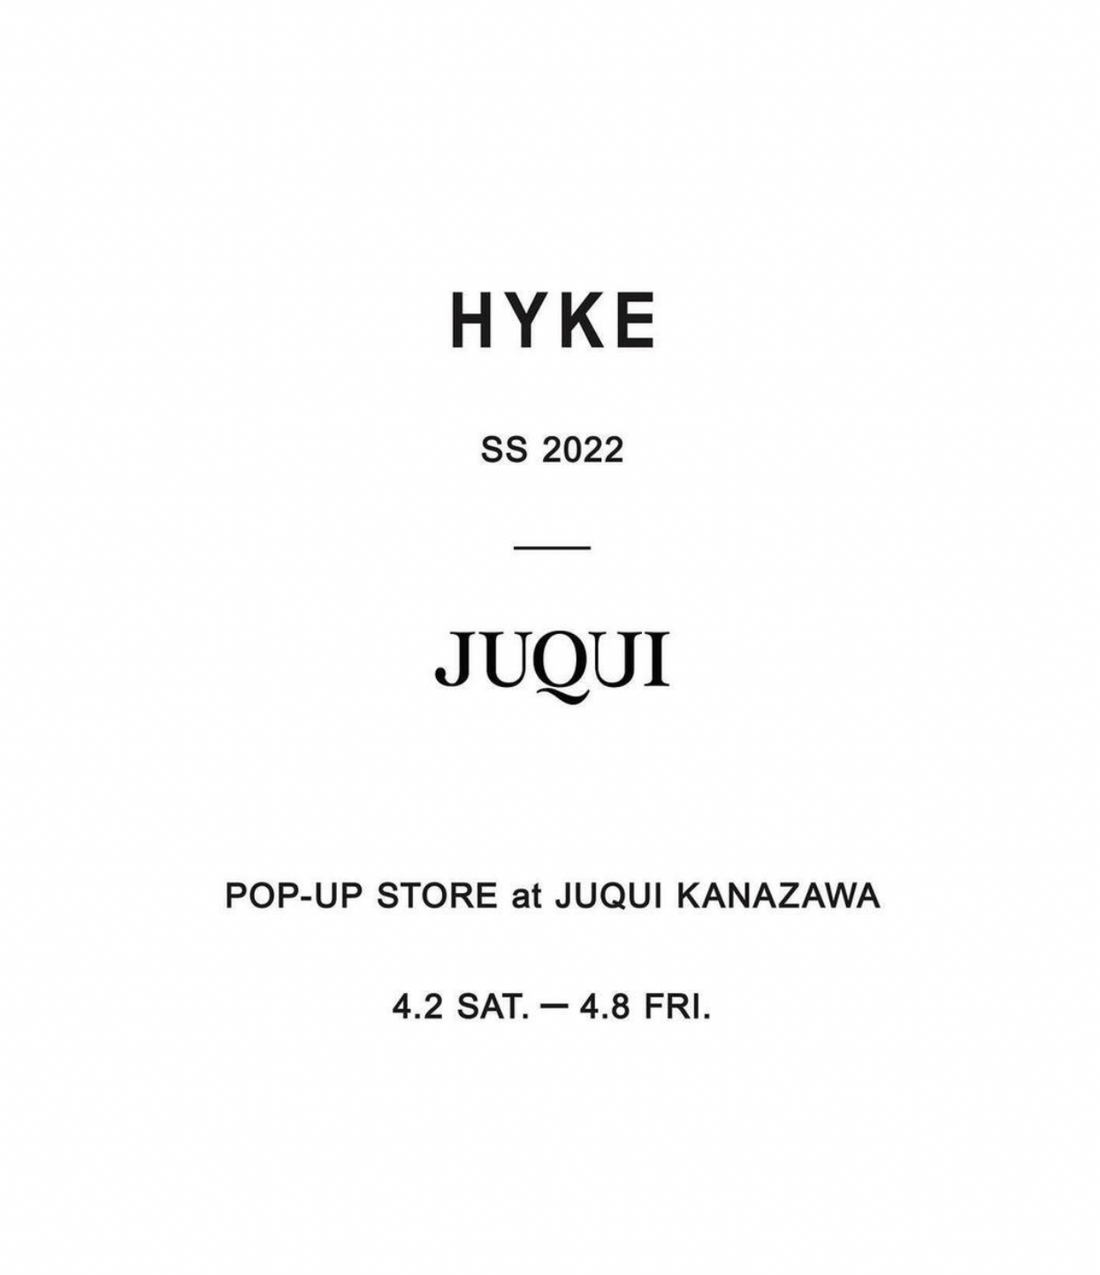 HYKE POP-UP SHOP AT JUQUI kanazawa